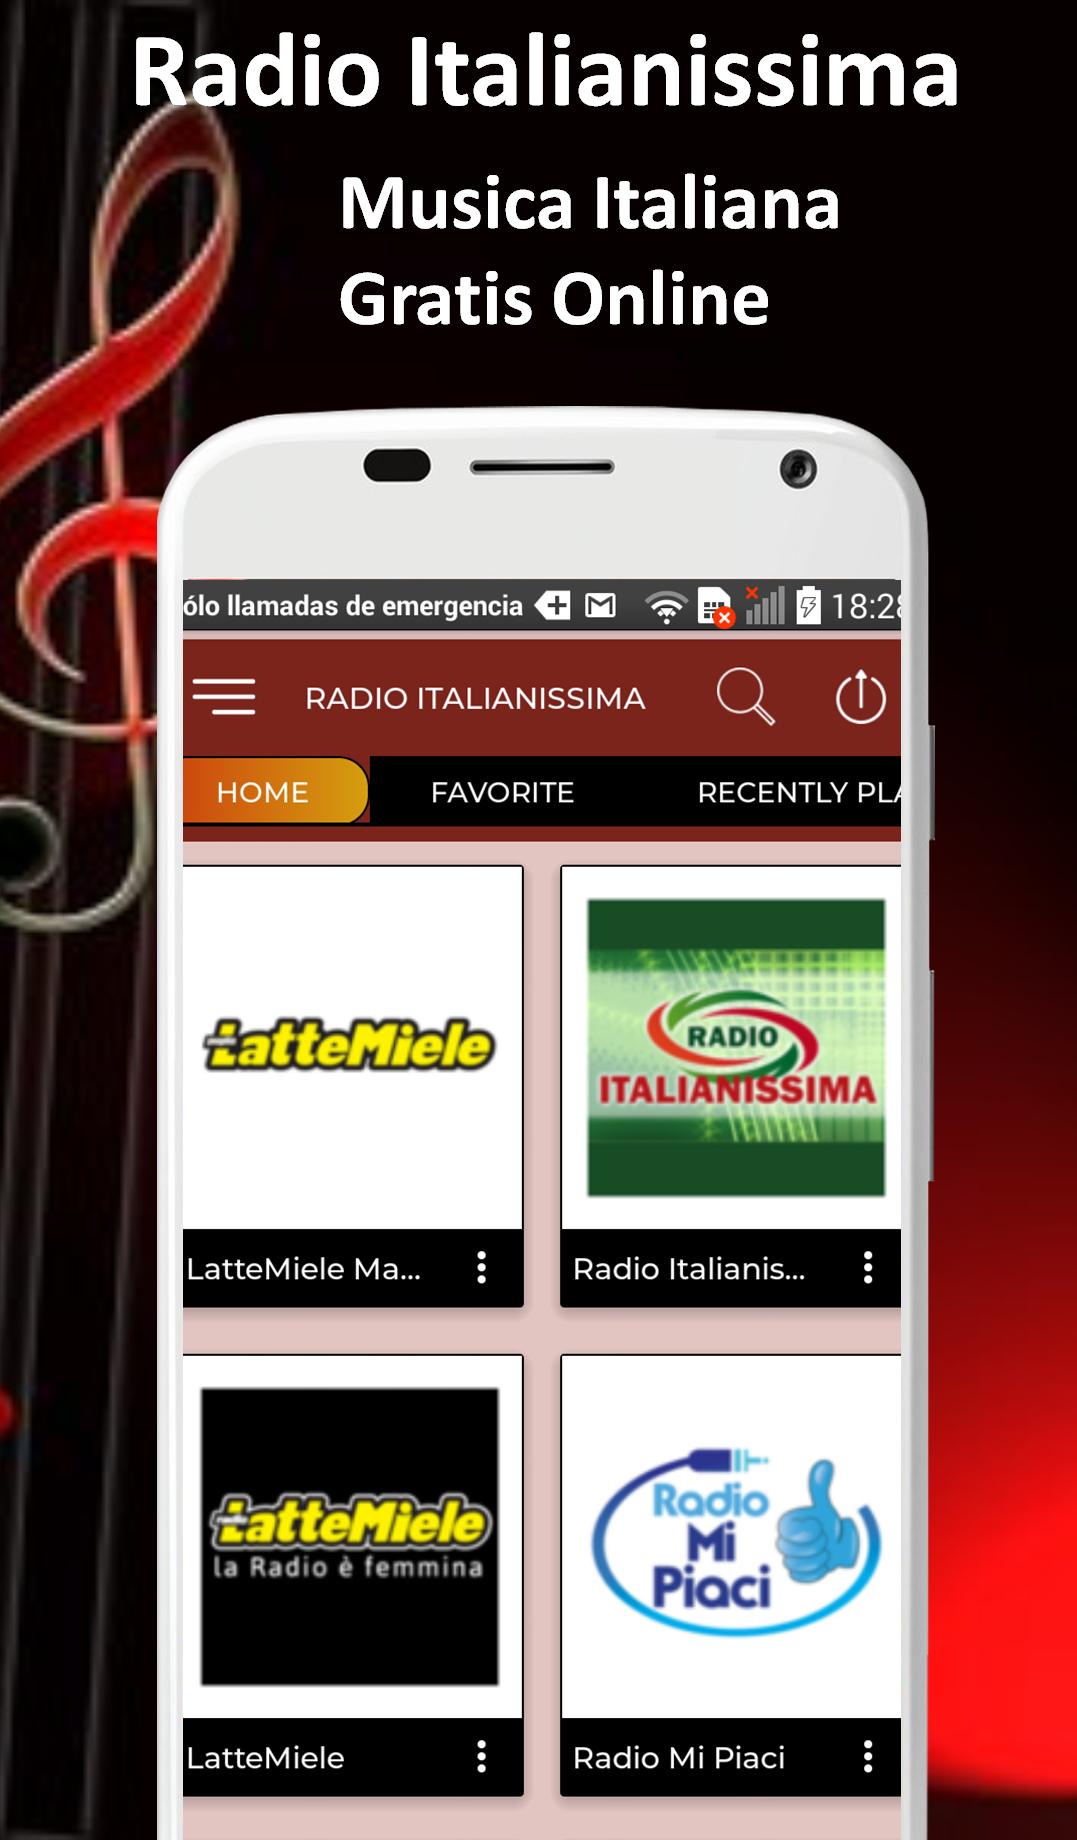 Radio Italianissima Italian Music Free Online 1.1 Screenshot 1